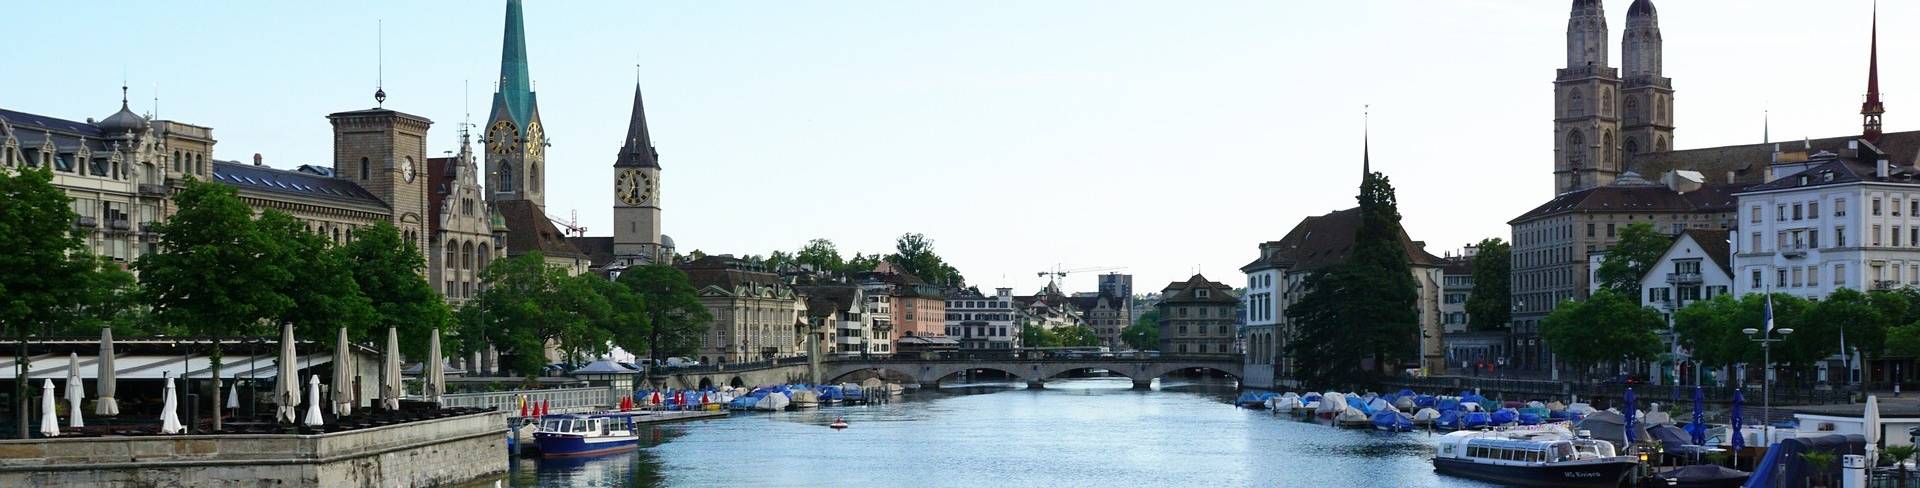 Цюрих - город в Швейцарии